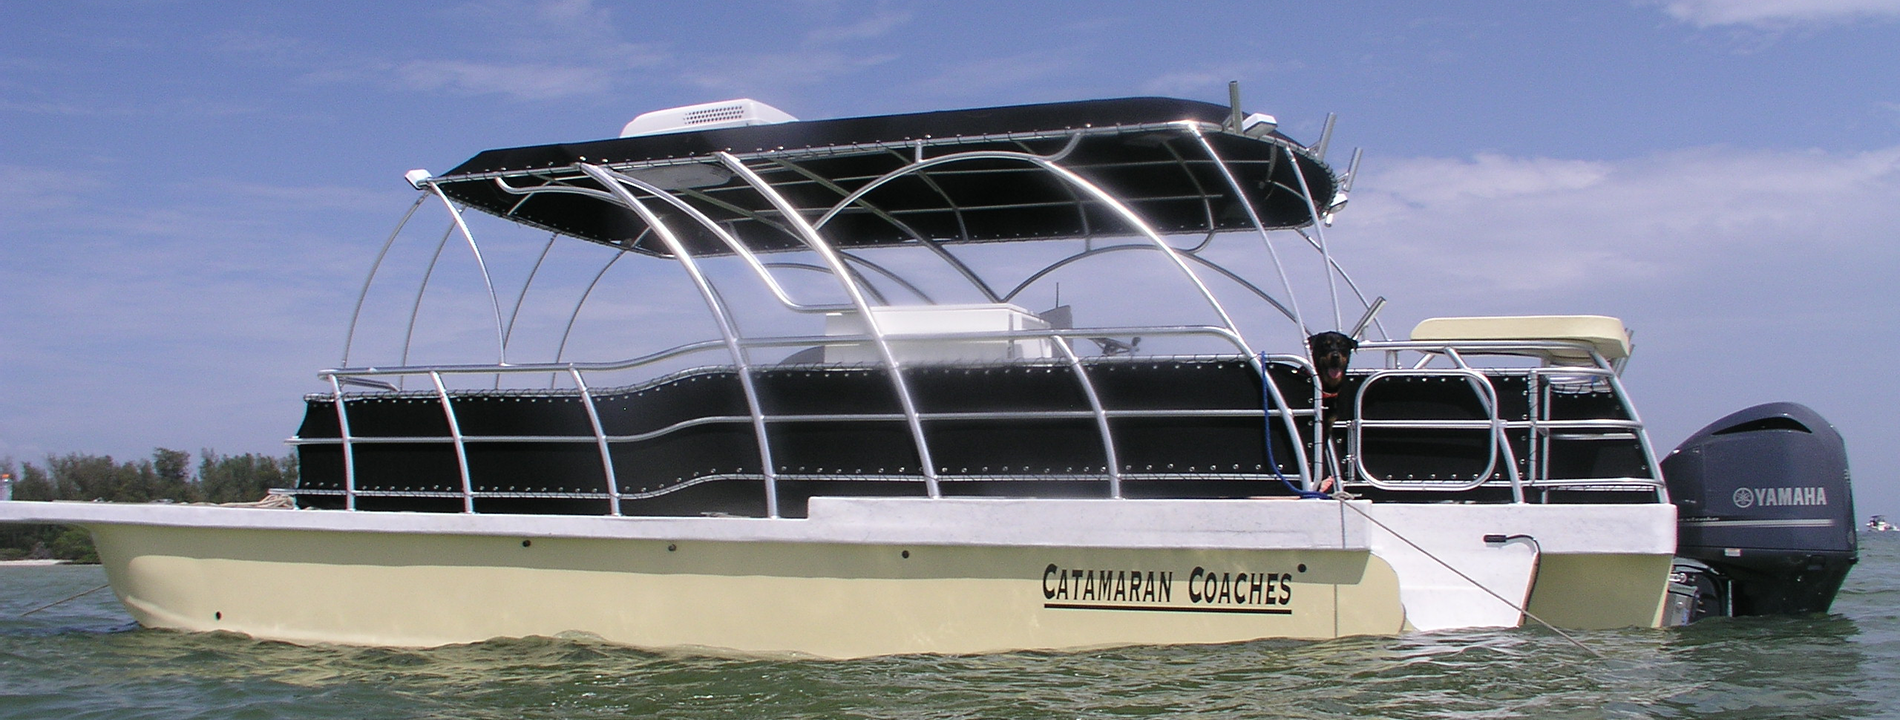 fiberglass catamaran boat